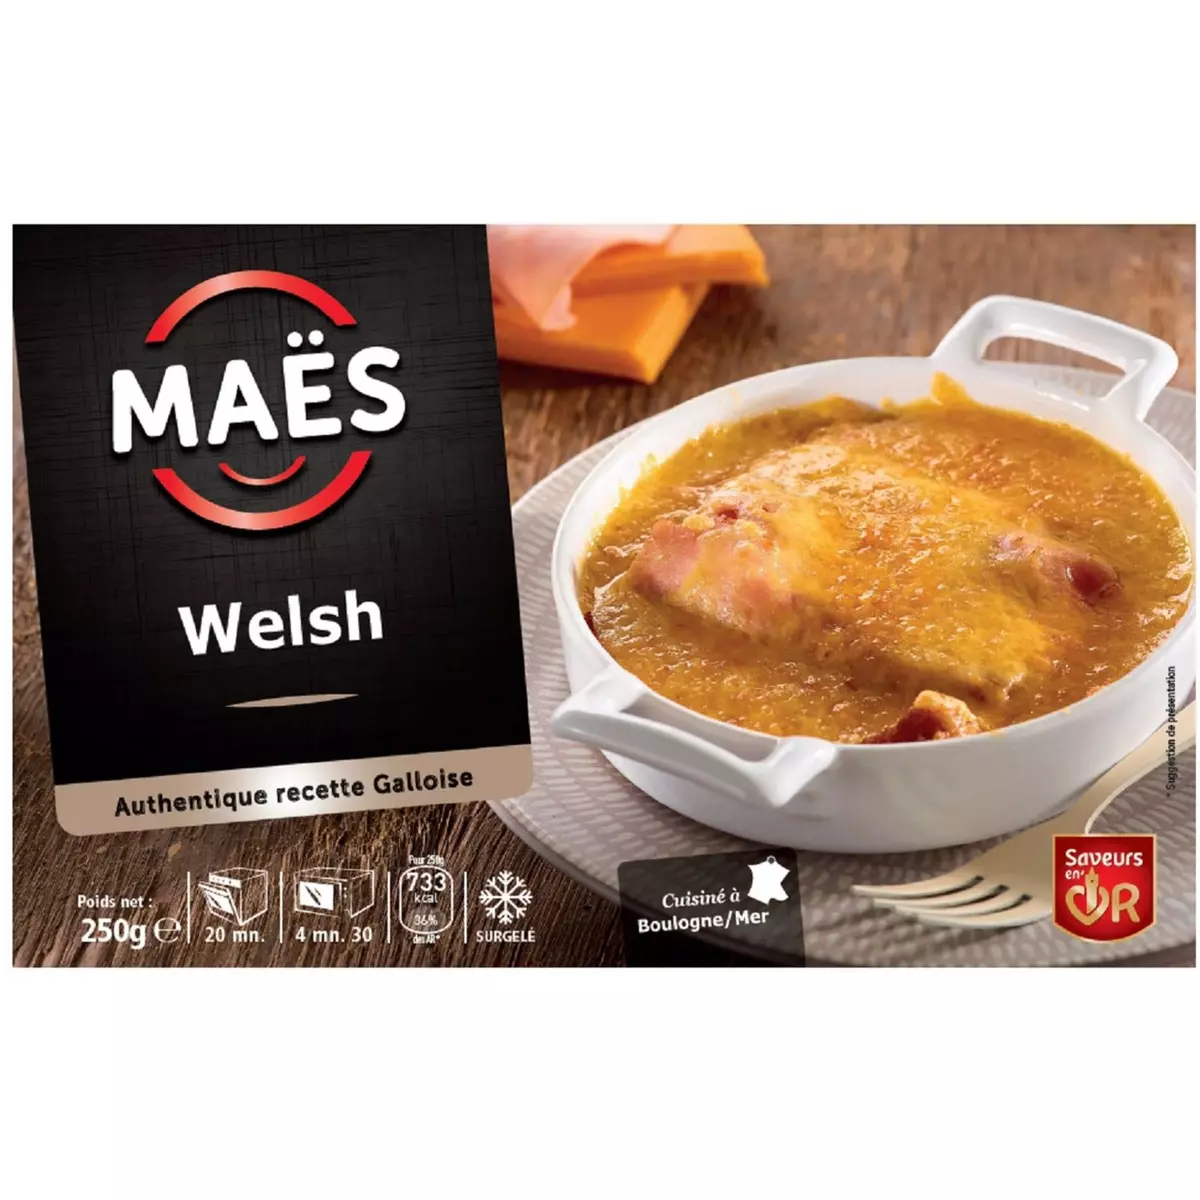 JACQUES MAES Welsh authentique recette Galloise 1 portion 250g